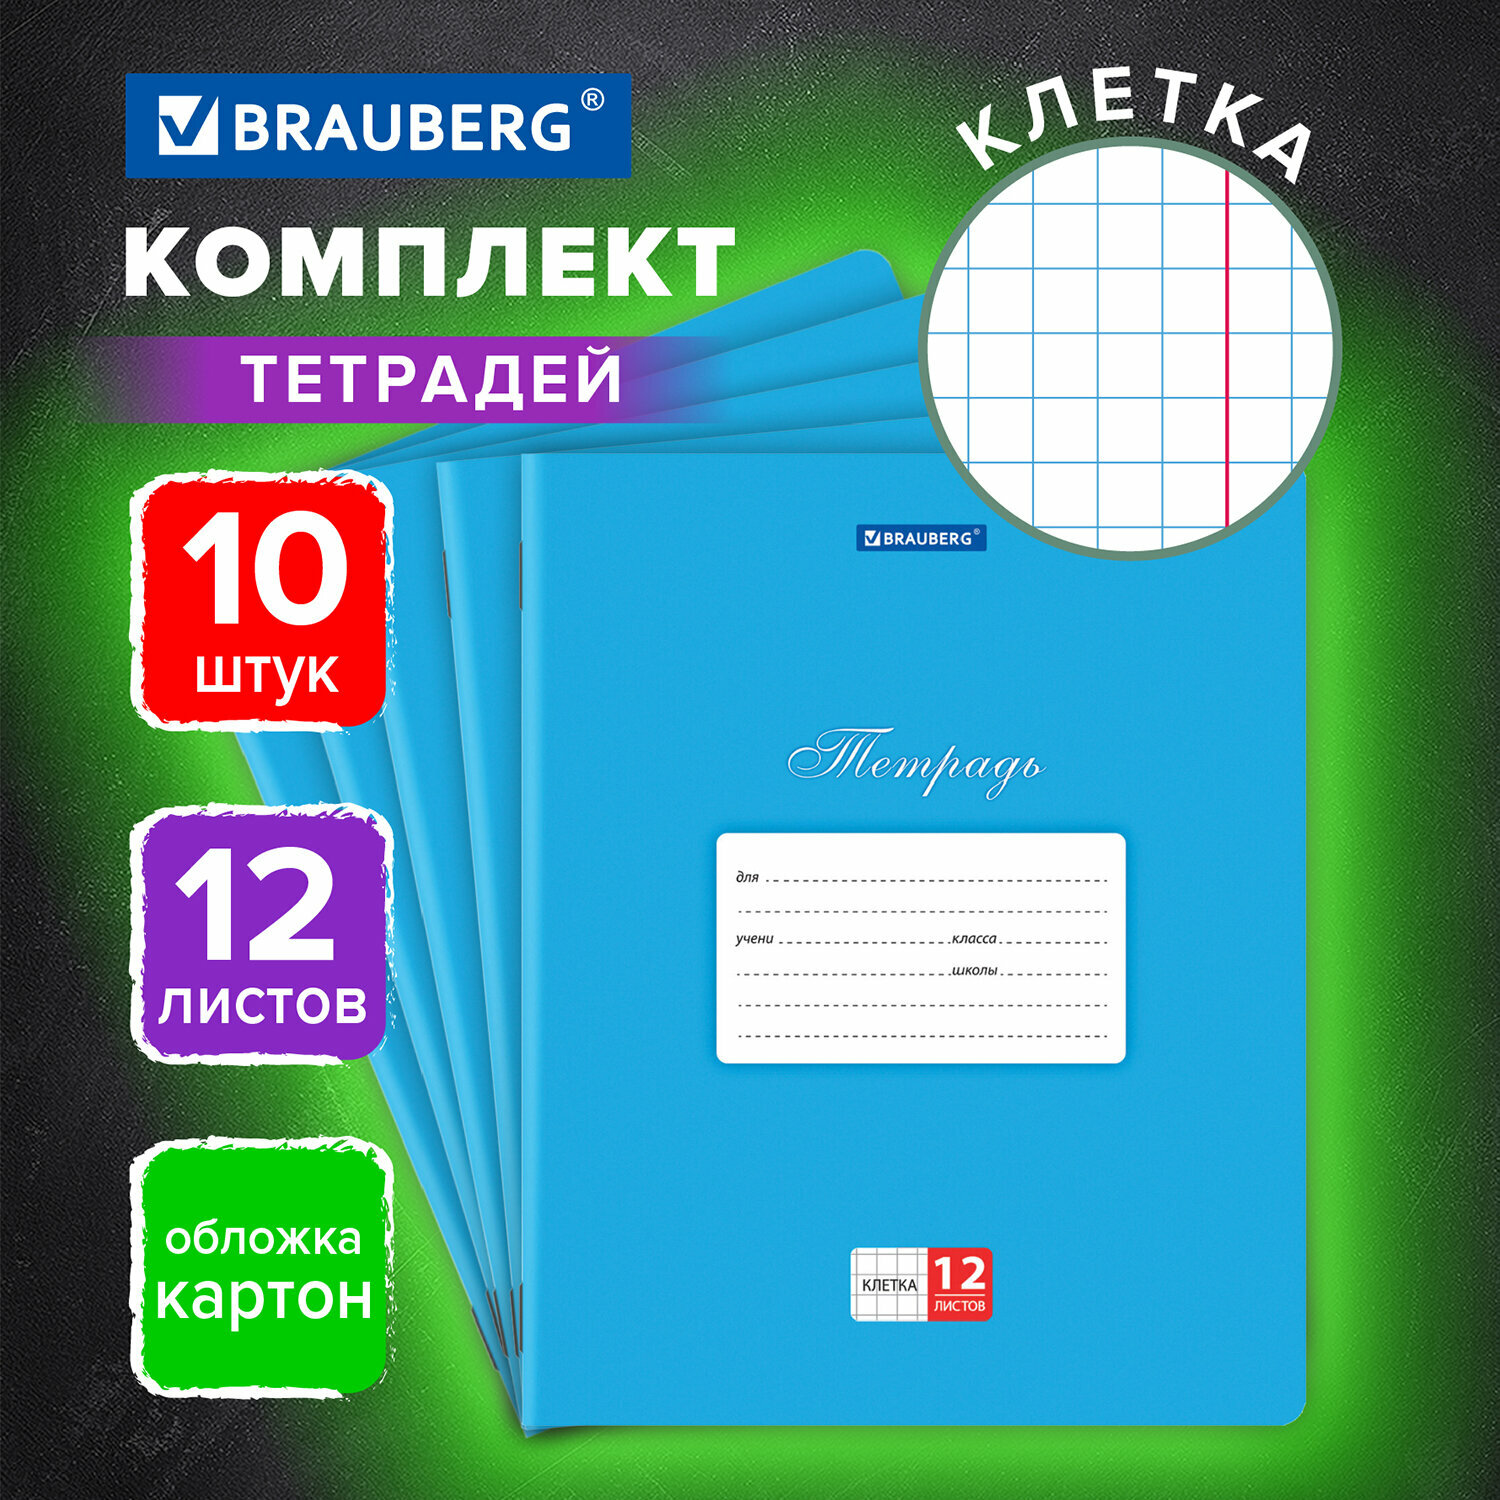 Тетрадь для школы тонкая 12 листов Комплект 10 штук Brauberg Классика клетка обложка картон Синяя 106651